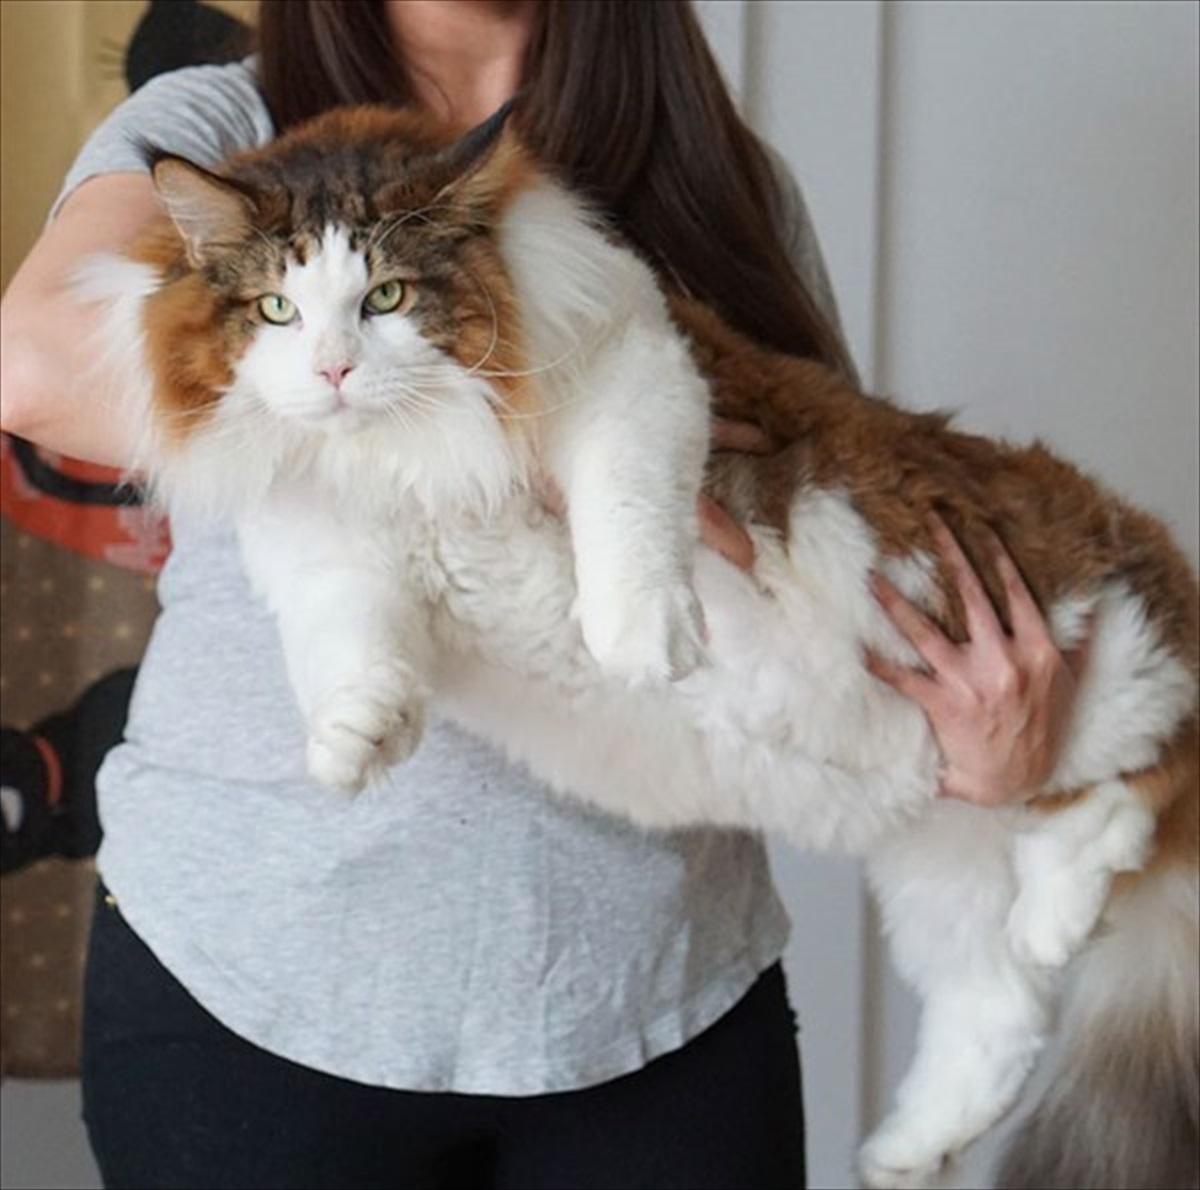 Nyに暮らす 大王サイズ の猫 彼が 猫飼いにとっての夢 と言われる理由は Buzzmag